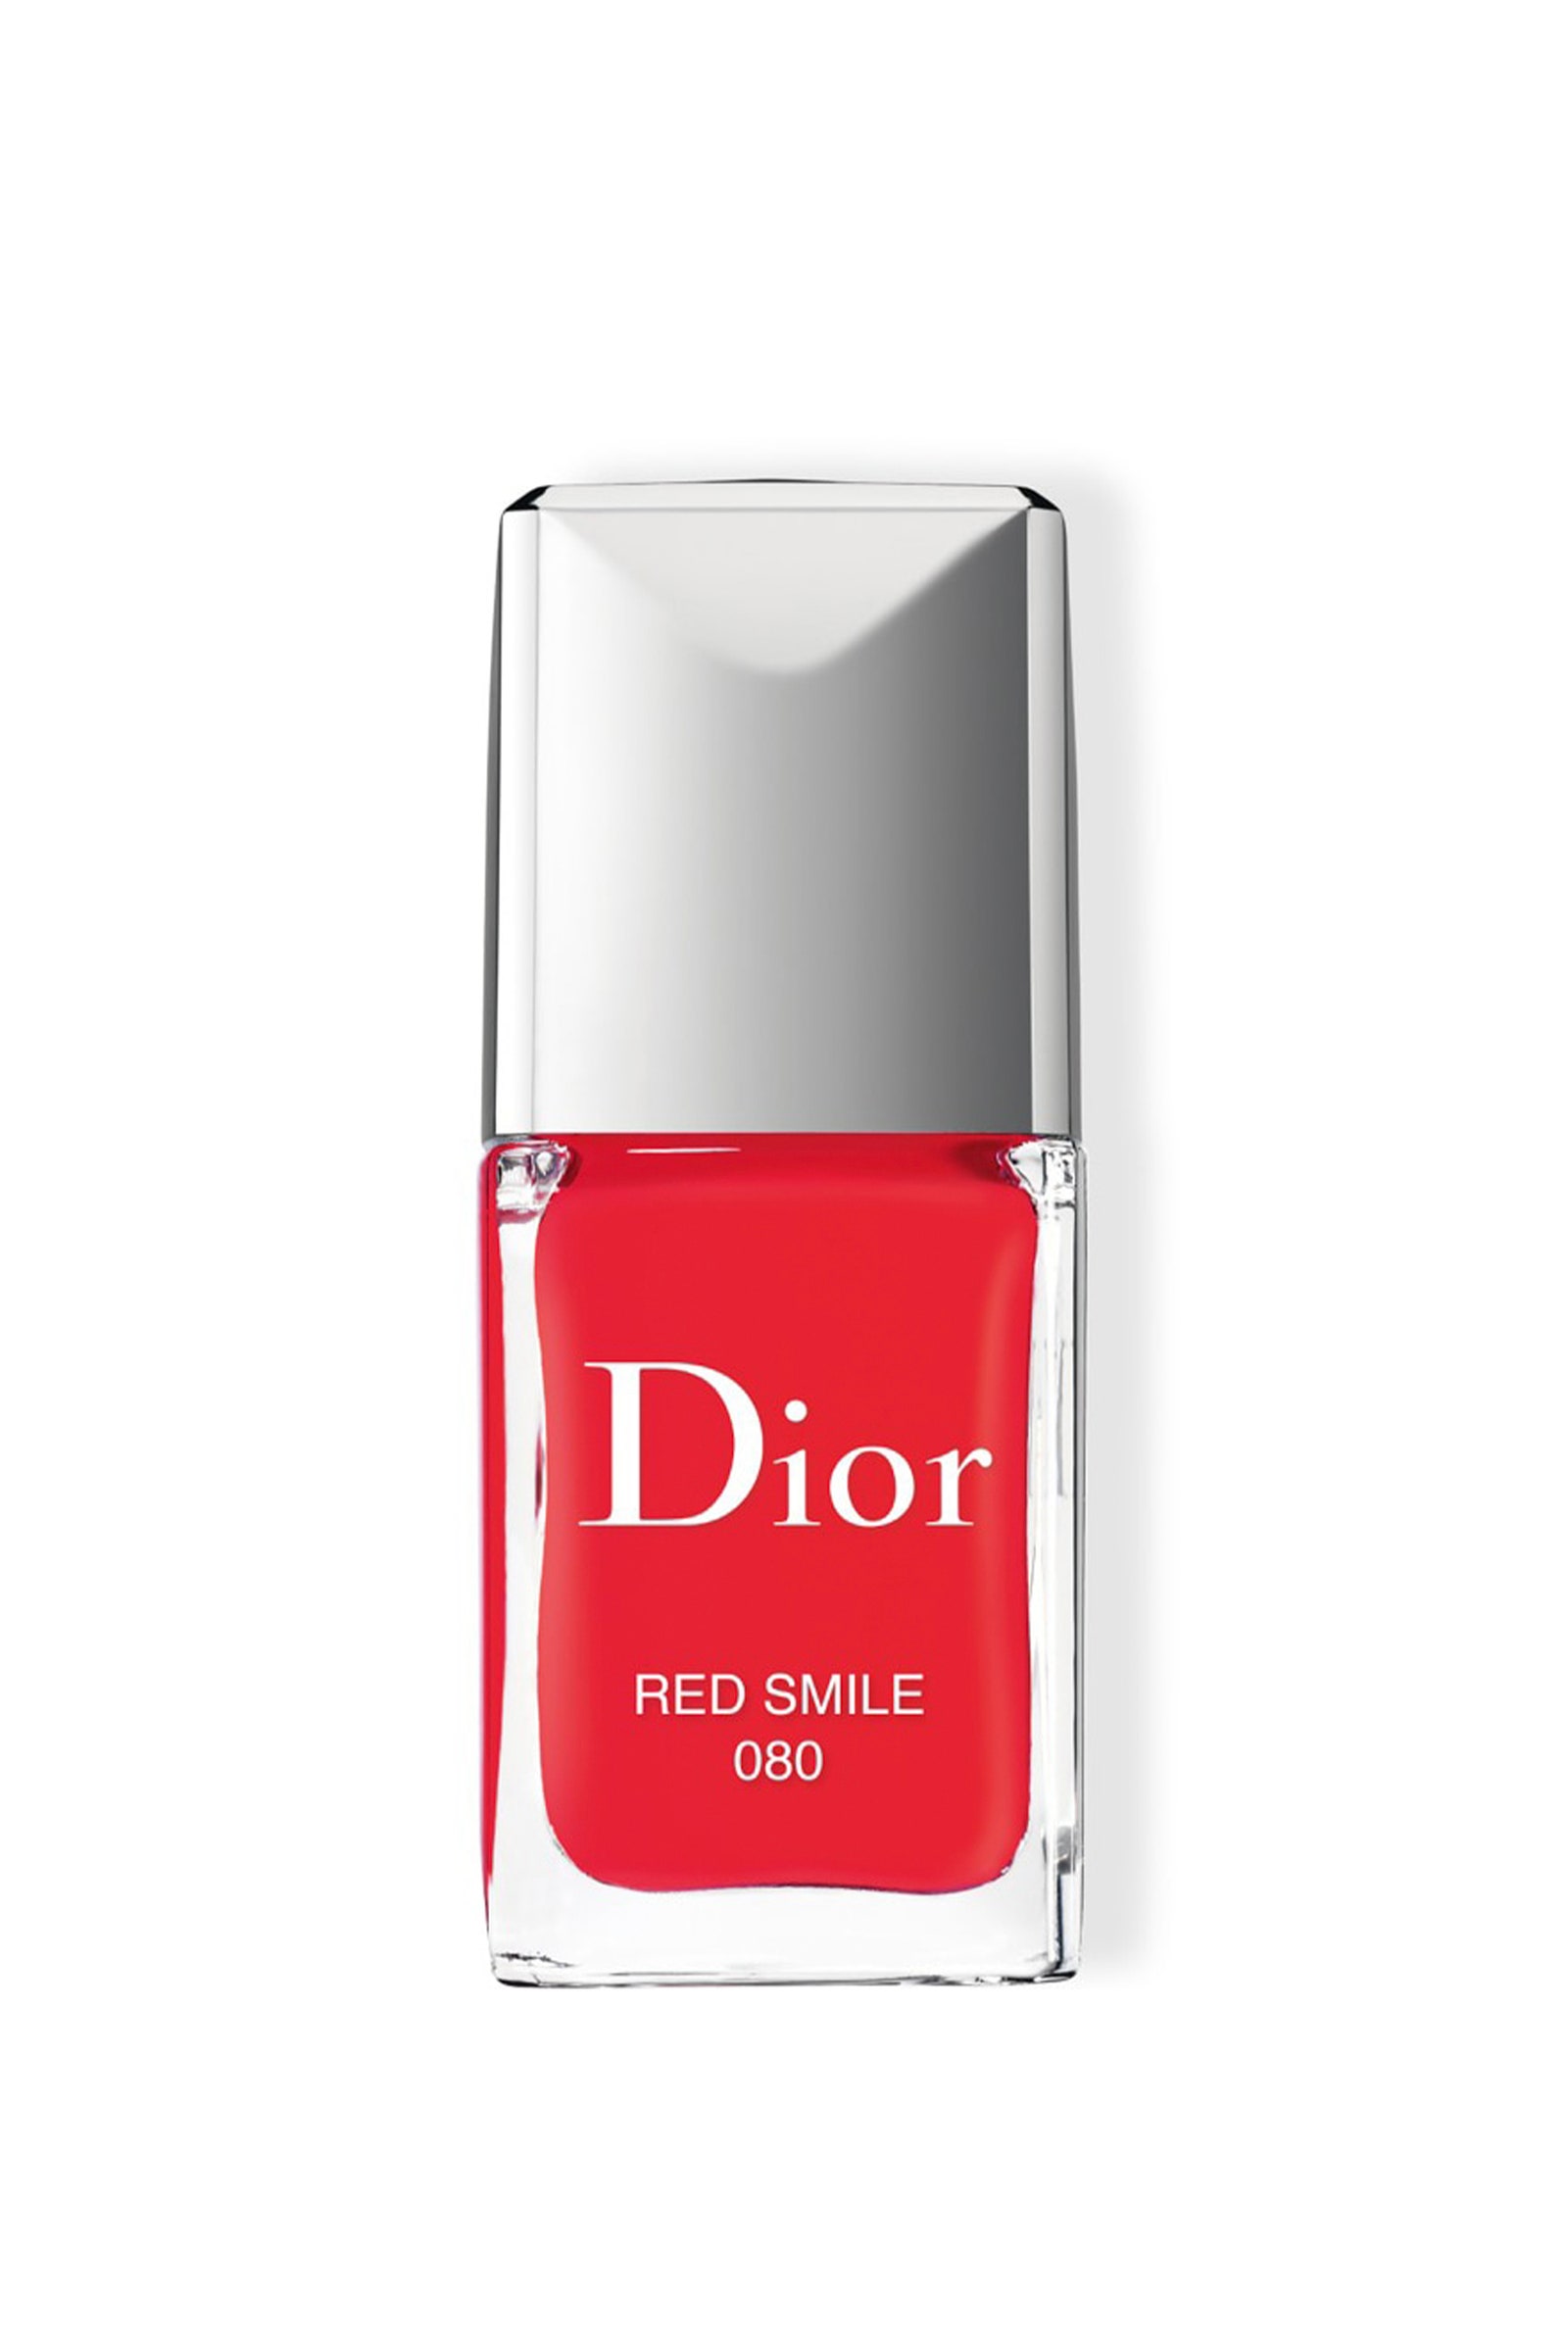 el esmalte de uñas rojo es elegante y atemporal.